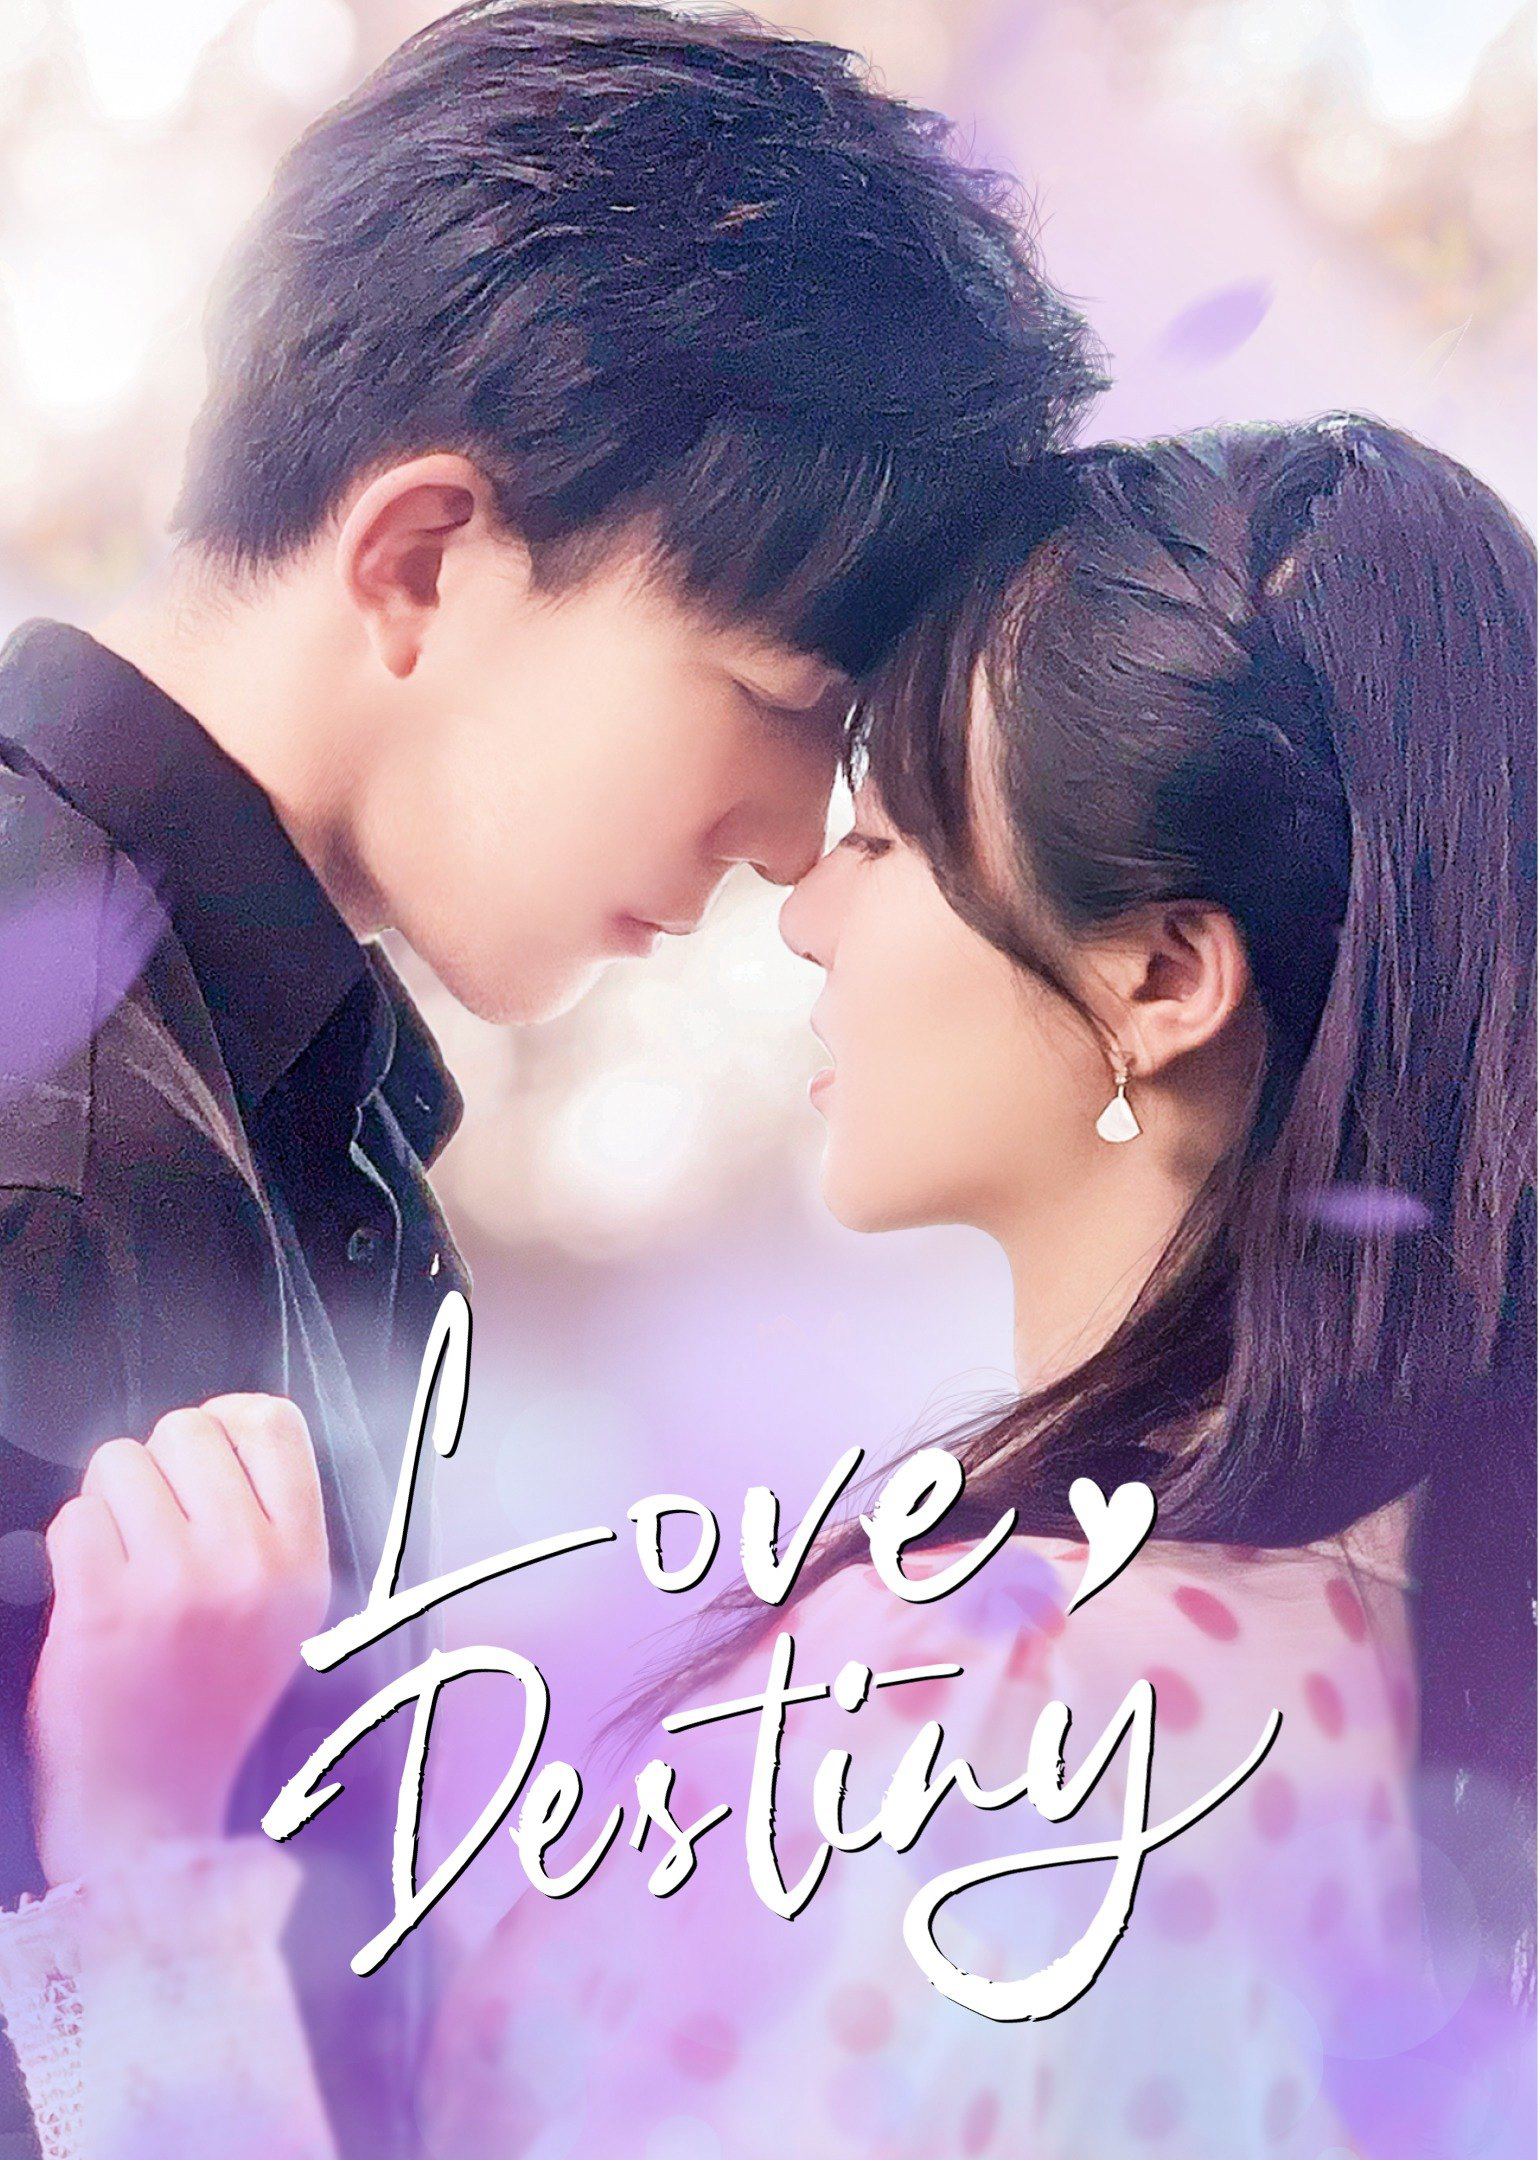 Poster Phim Yêu Em Là Định Mệnh (Love Destiny)